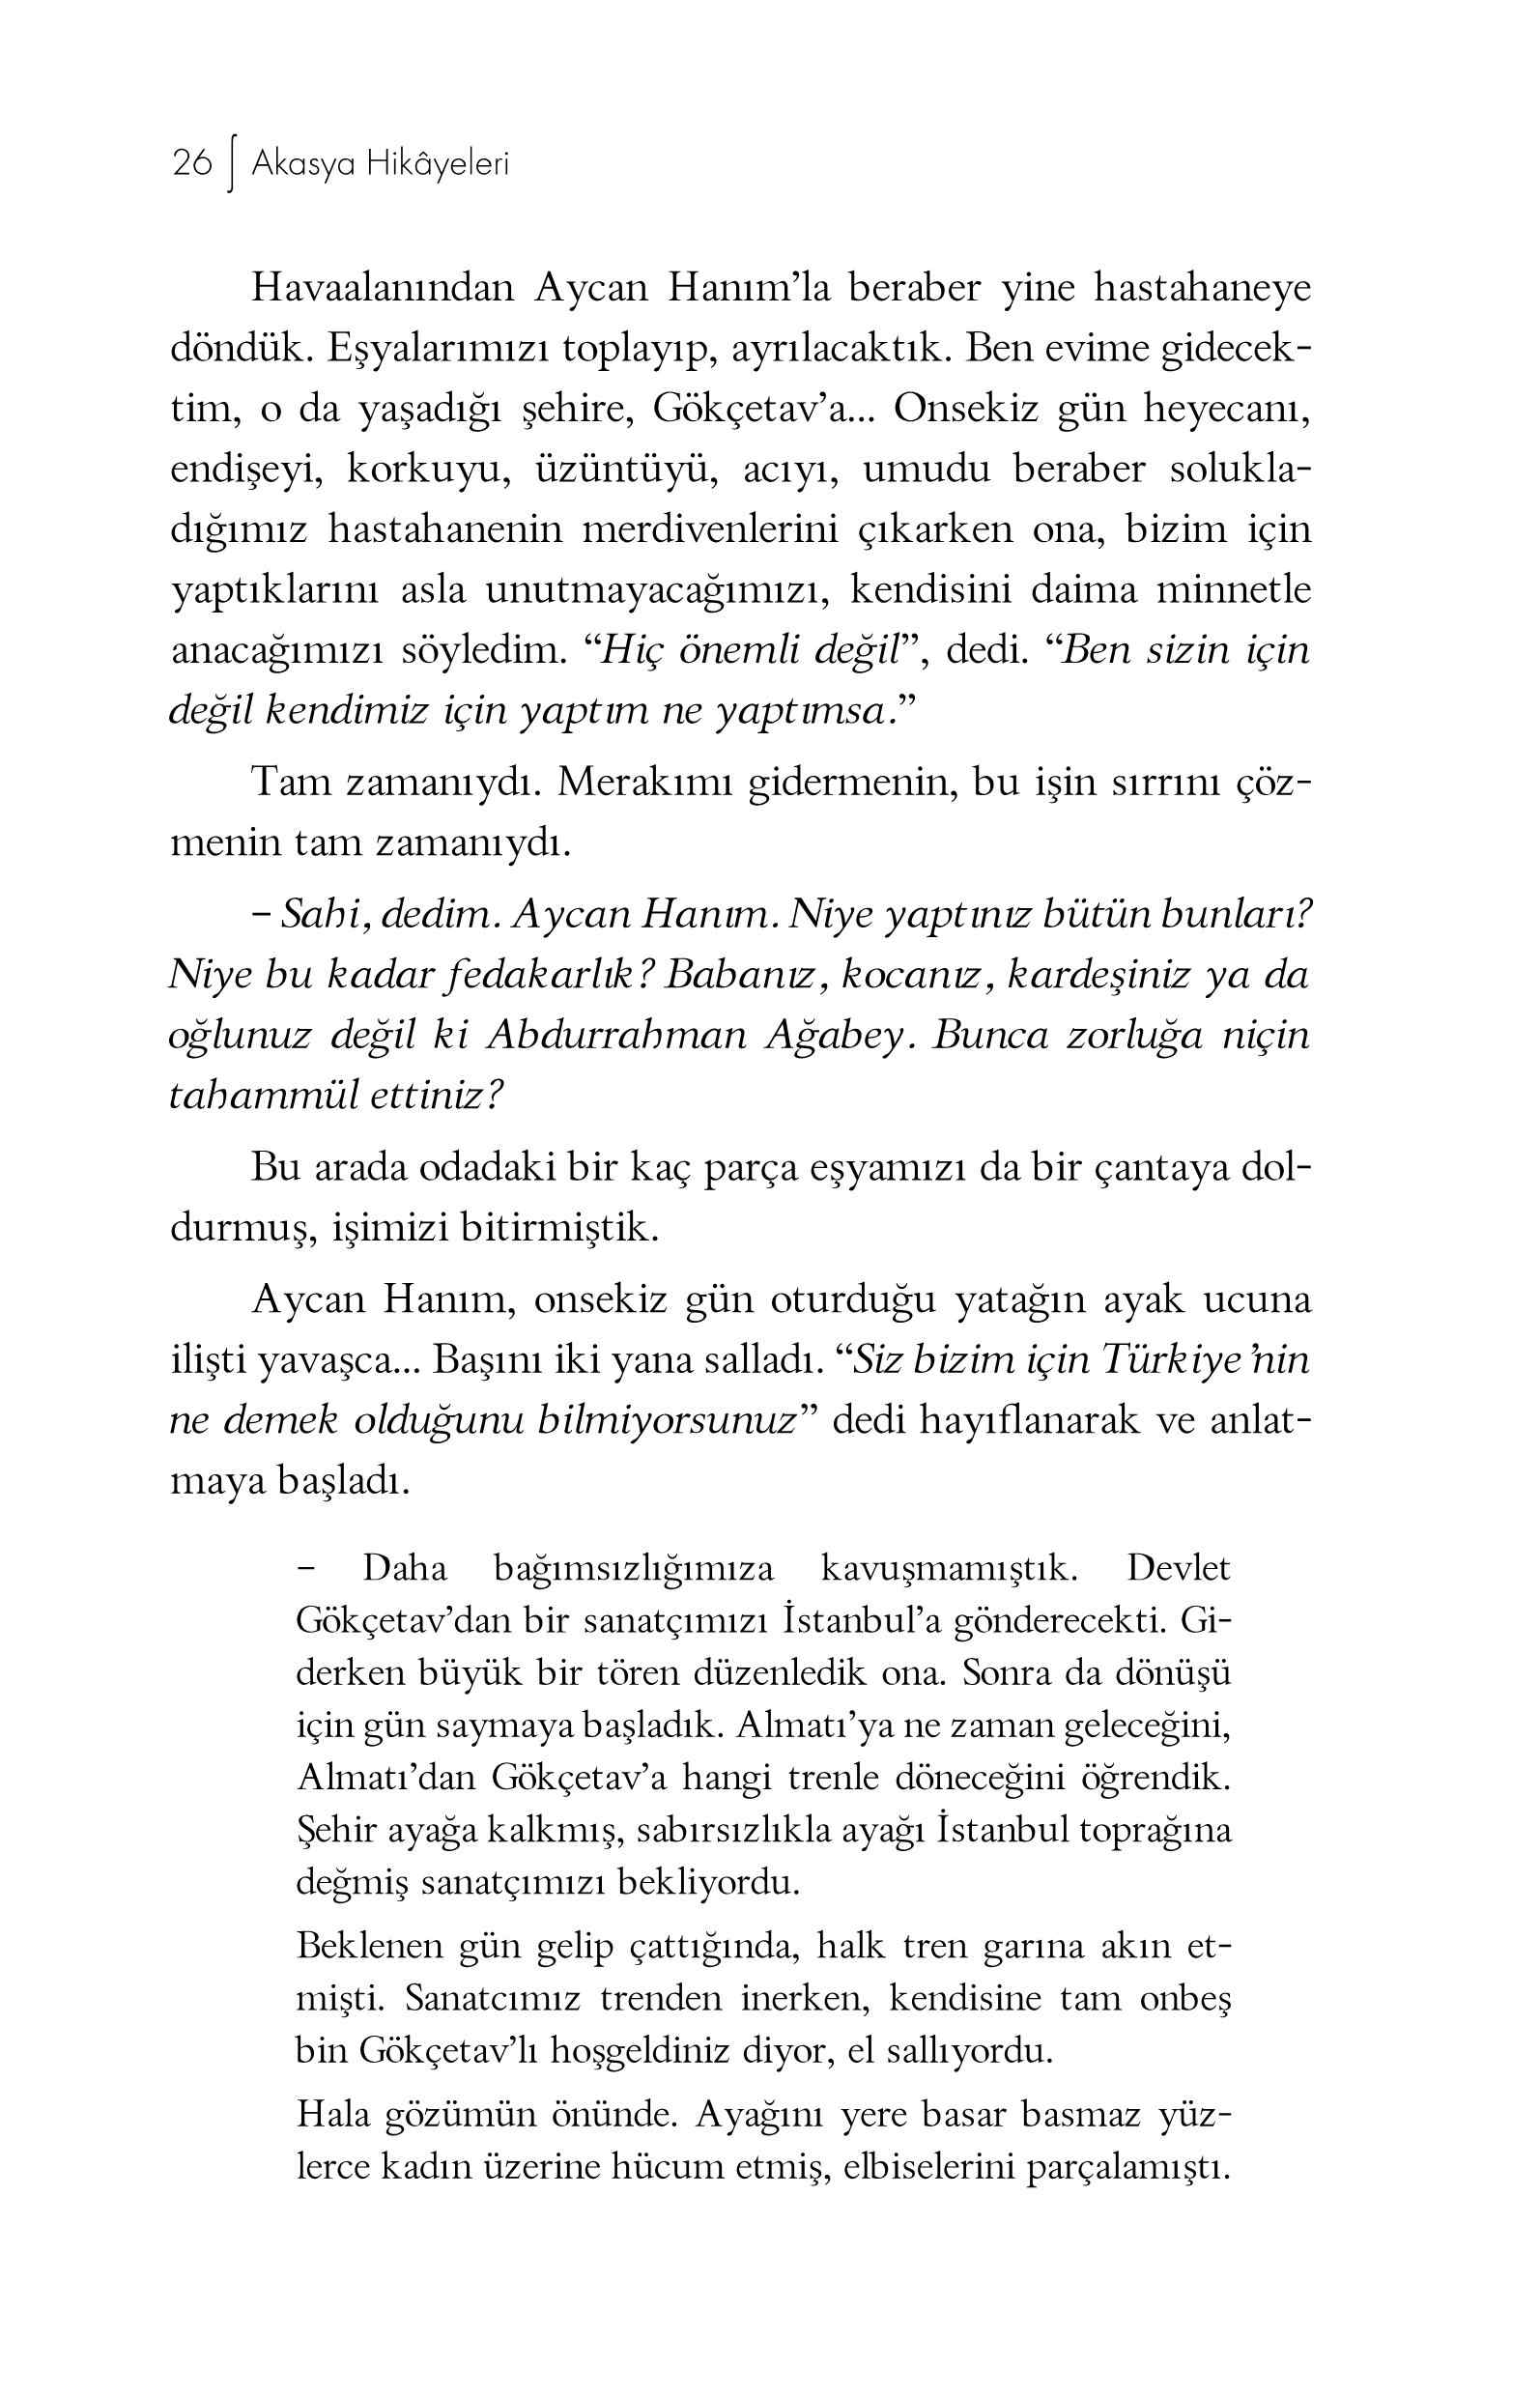 Akasya Hikayeleri-1 - Ali Tokul - UfukYayinlari.pdf, 123-Sayfa 